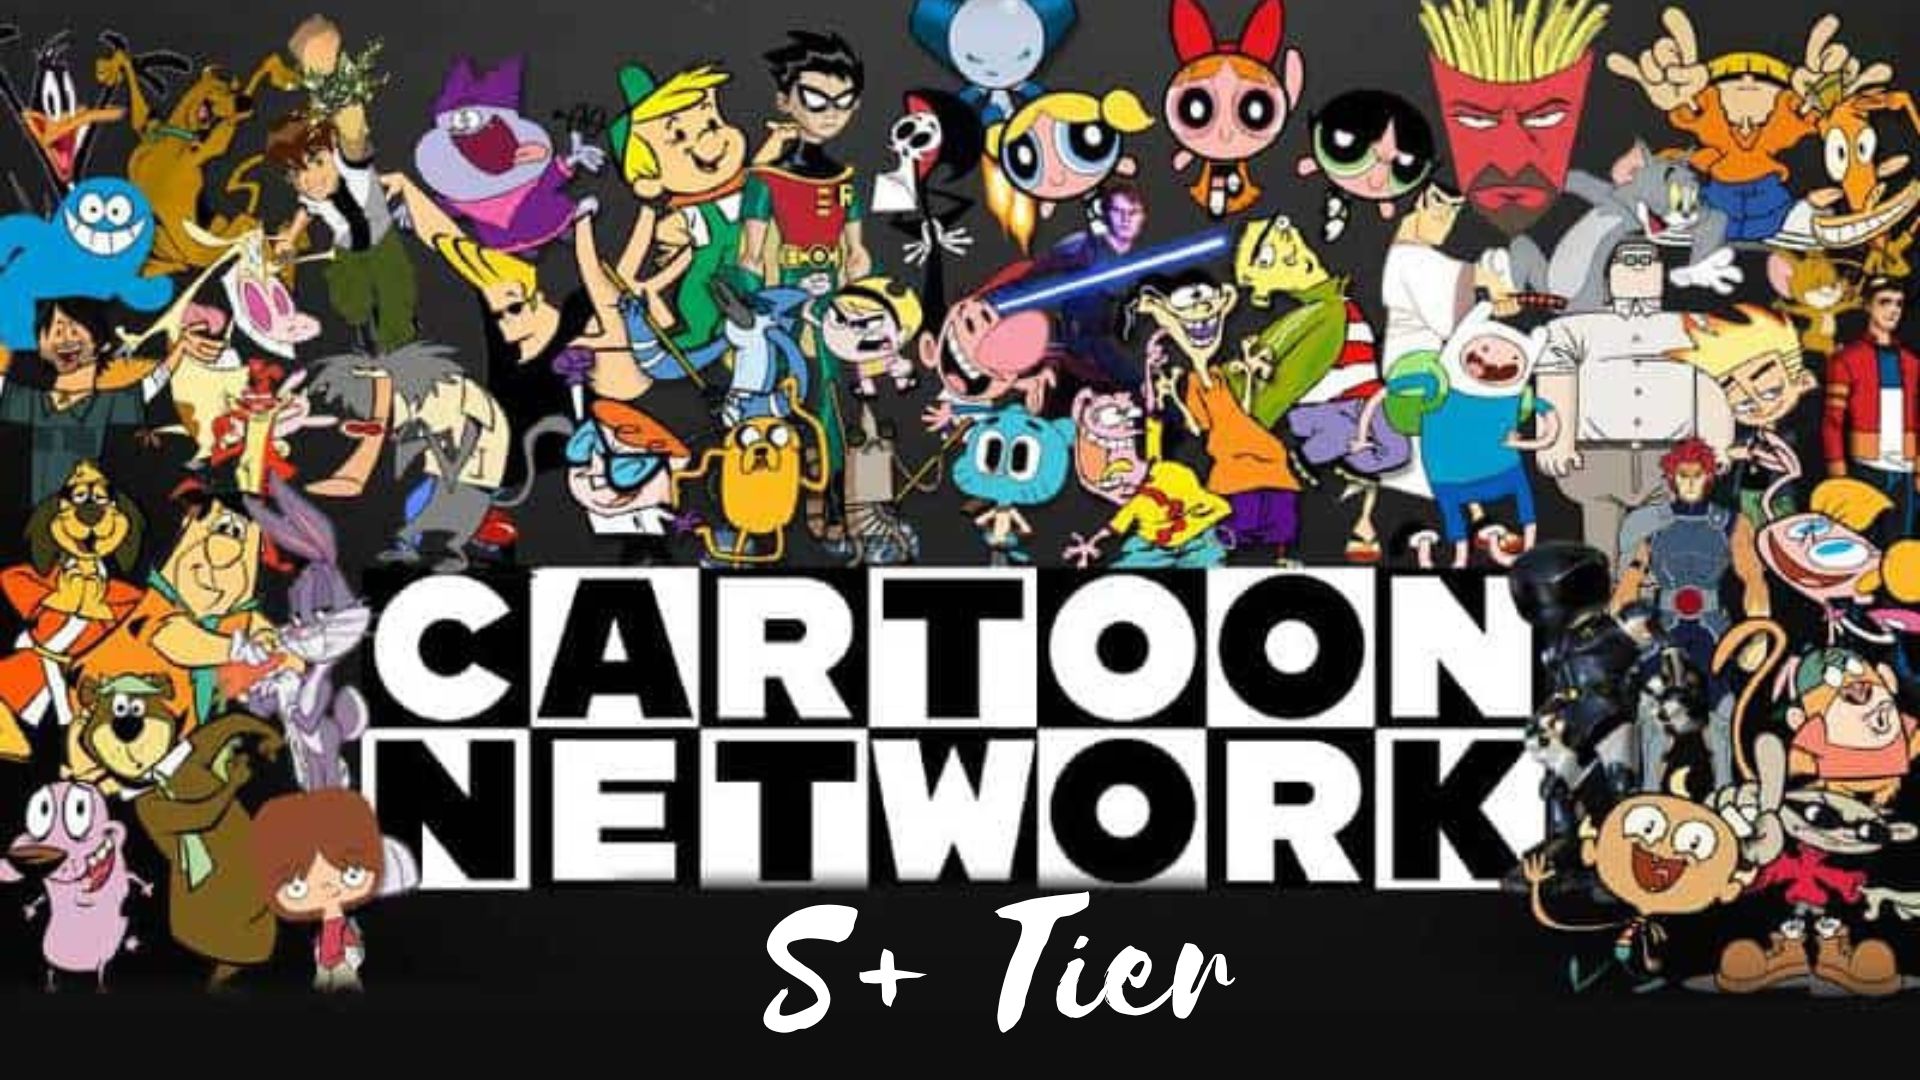 Outstanding cartoons of cartoon network